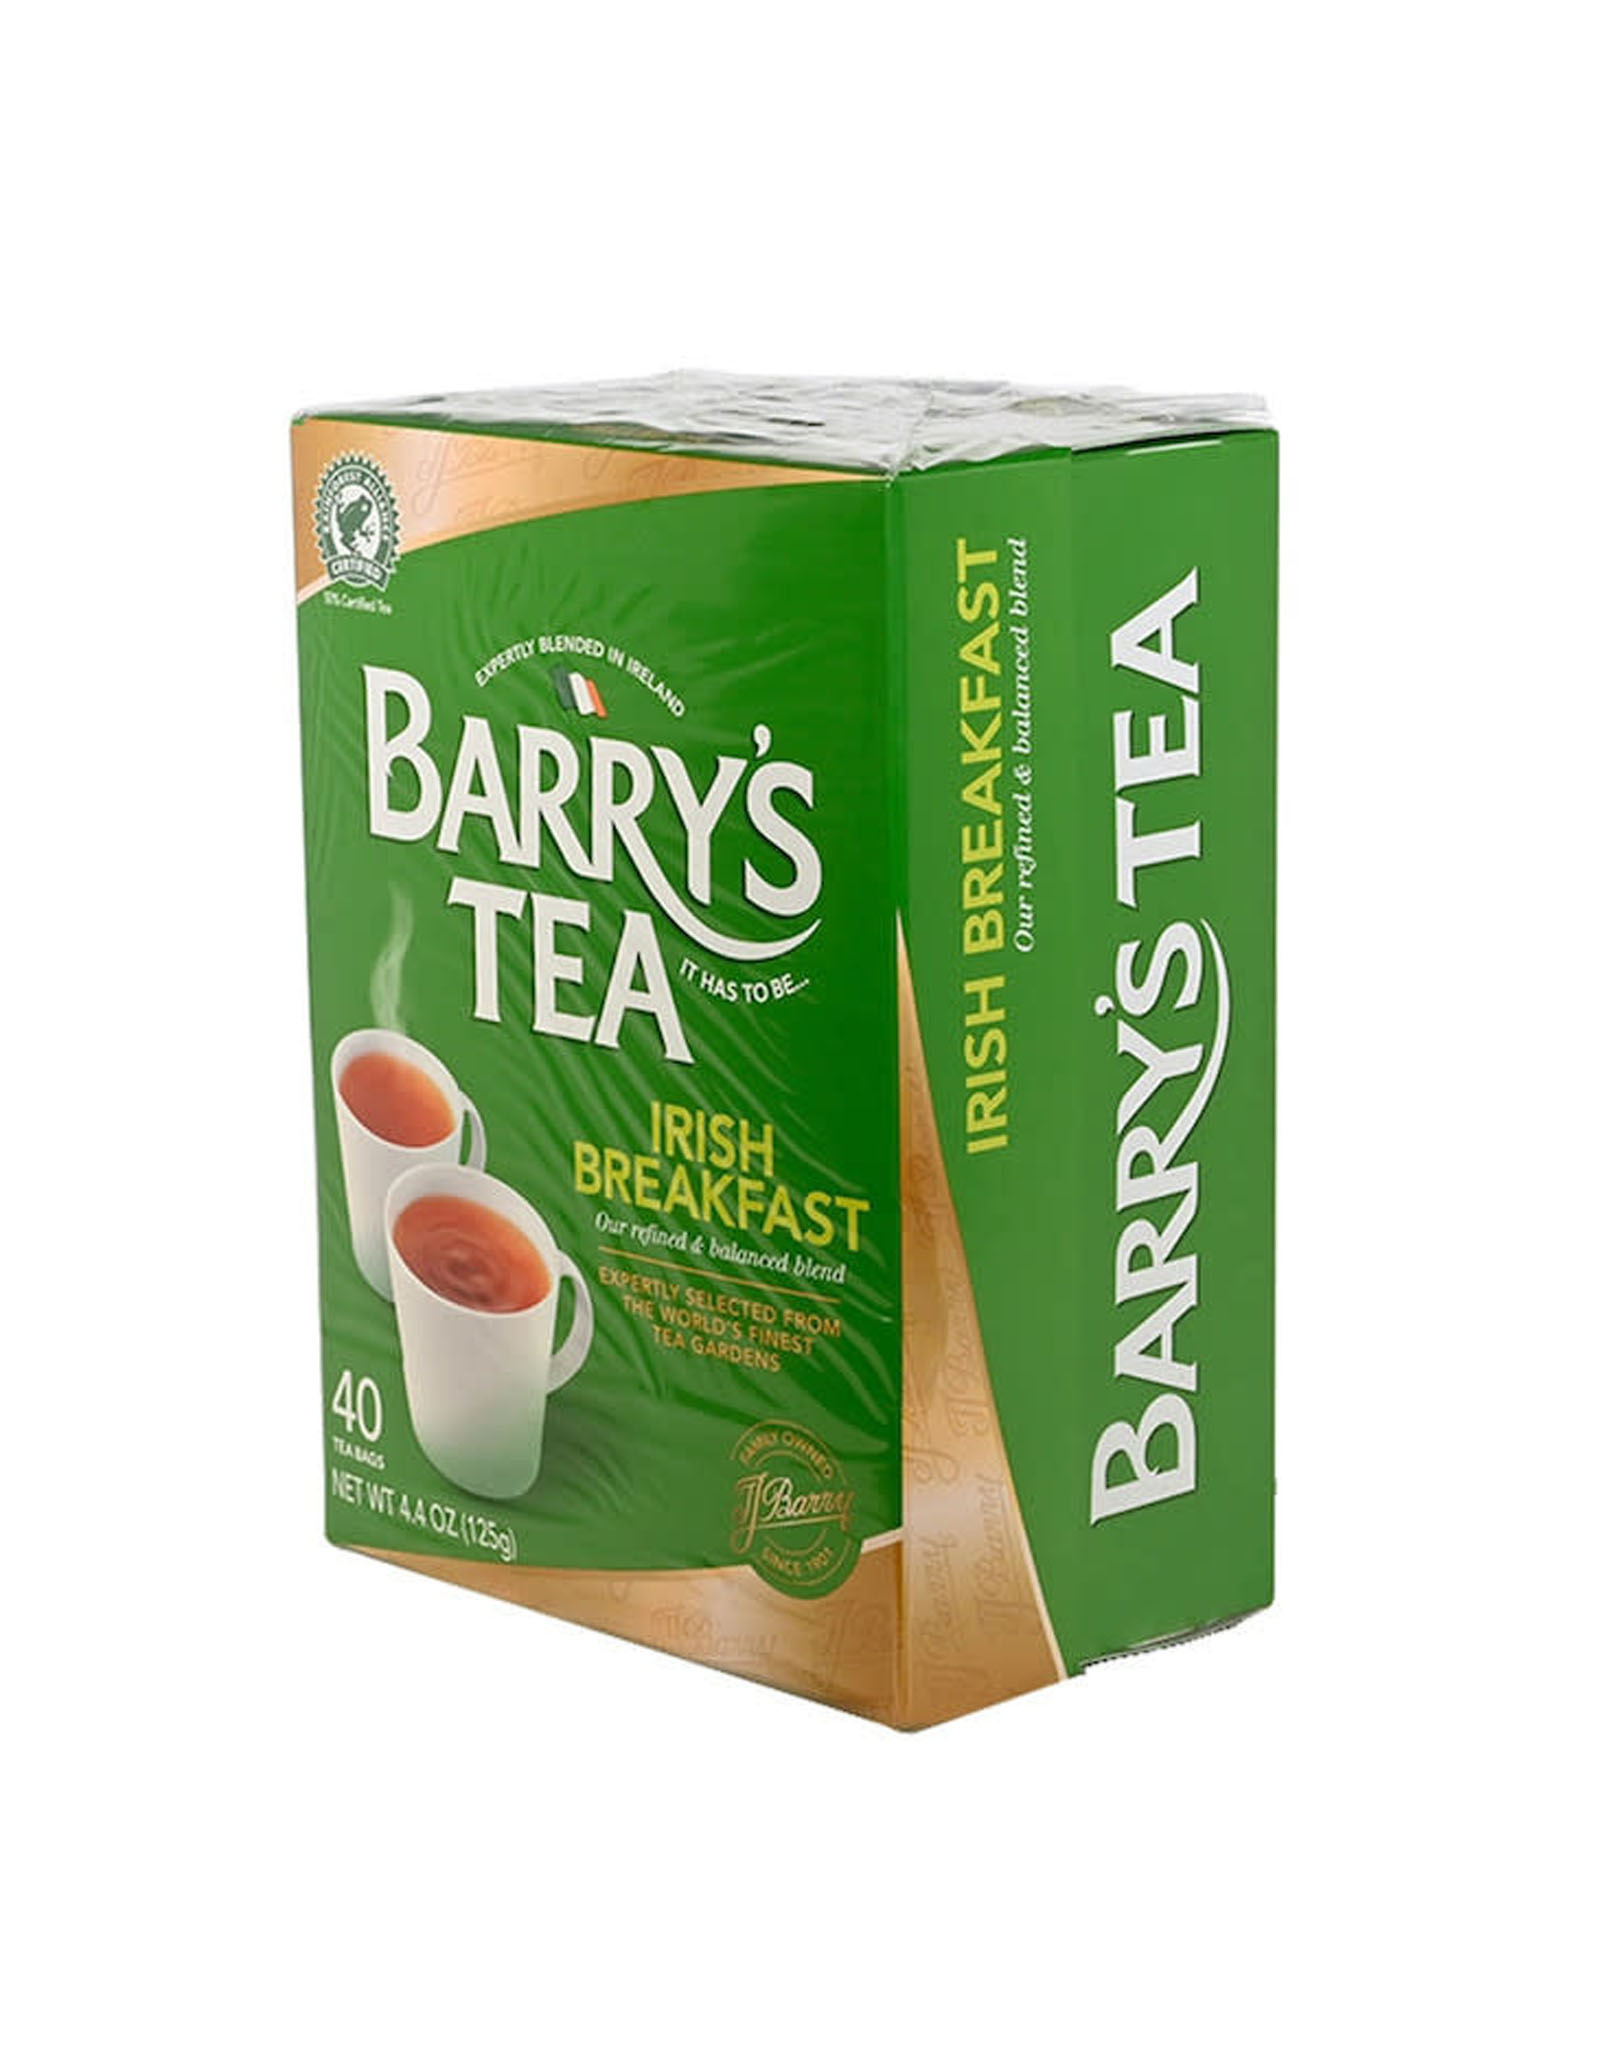 TEAS BARRY'S IRISH BREAKFAST TEA (125G)